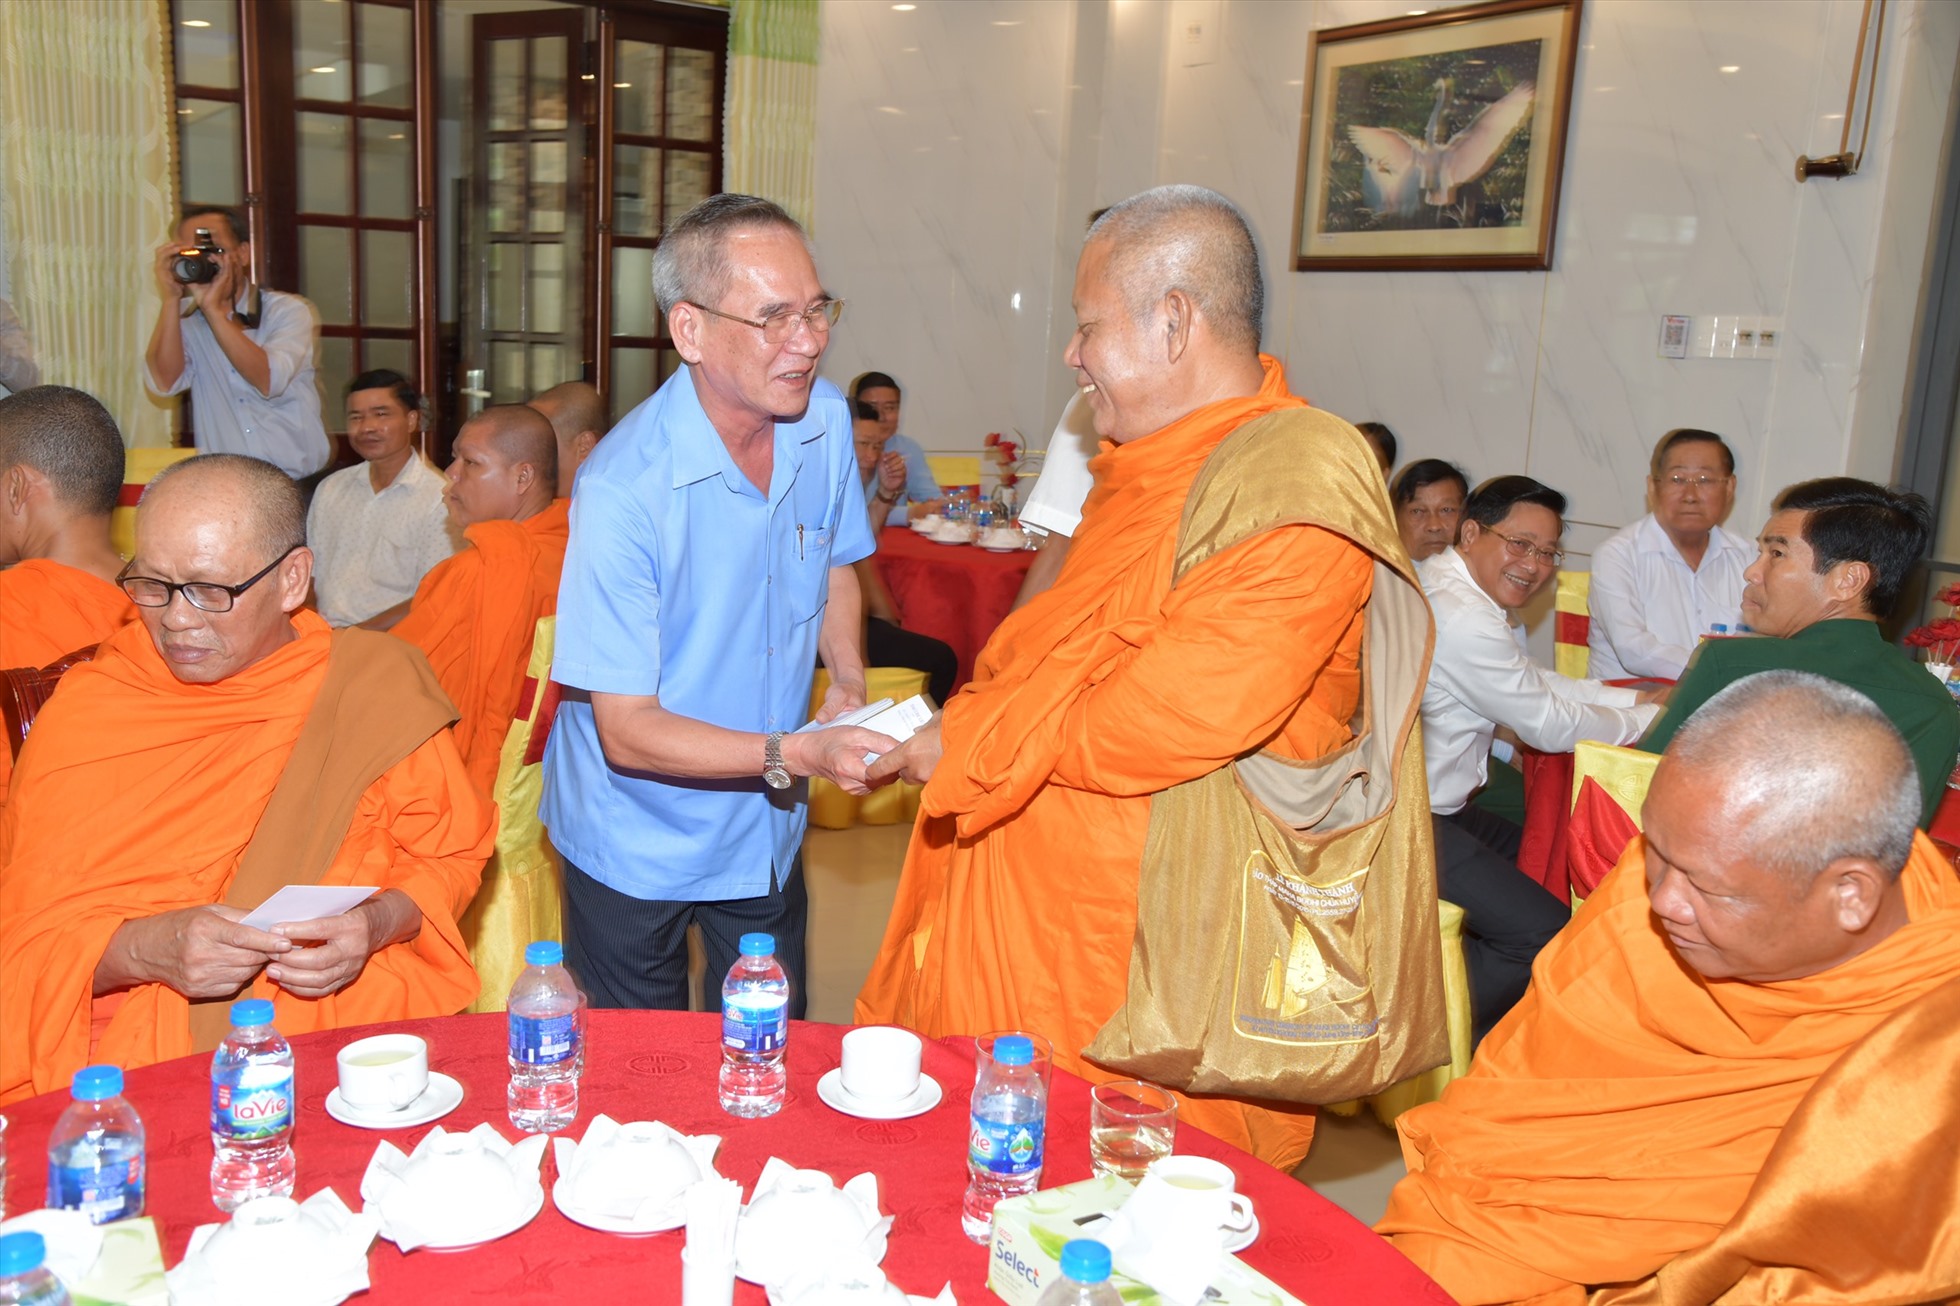 Lãnh đạo tỉnh Bạc Liêu thăm hỏi sức khỏe, tặng quà cho các chức sắc tôn giáo, người có uy tín trong đồng bào dân tộc Khmer. Ảnh: Phạm Đông 